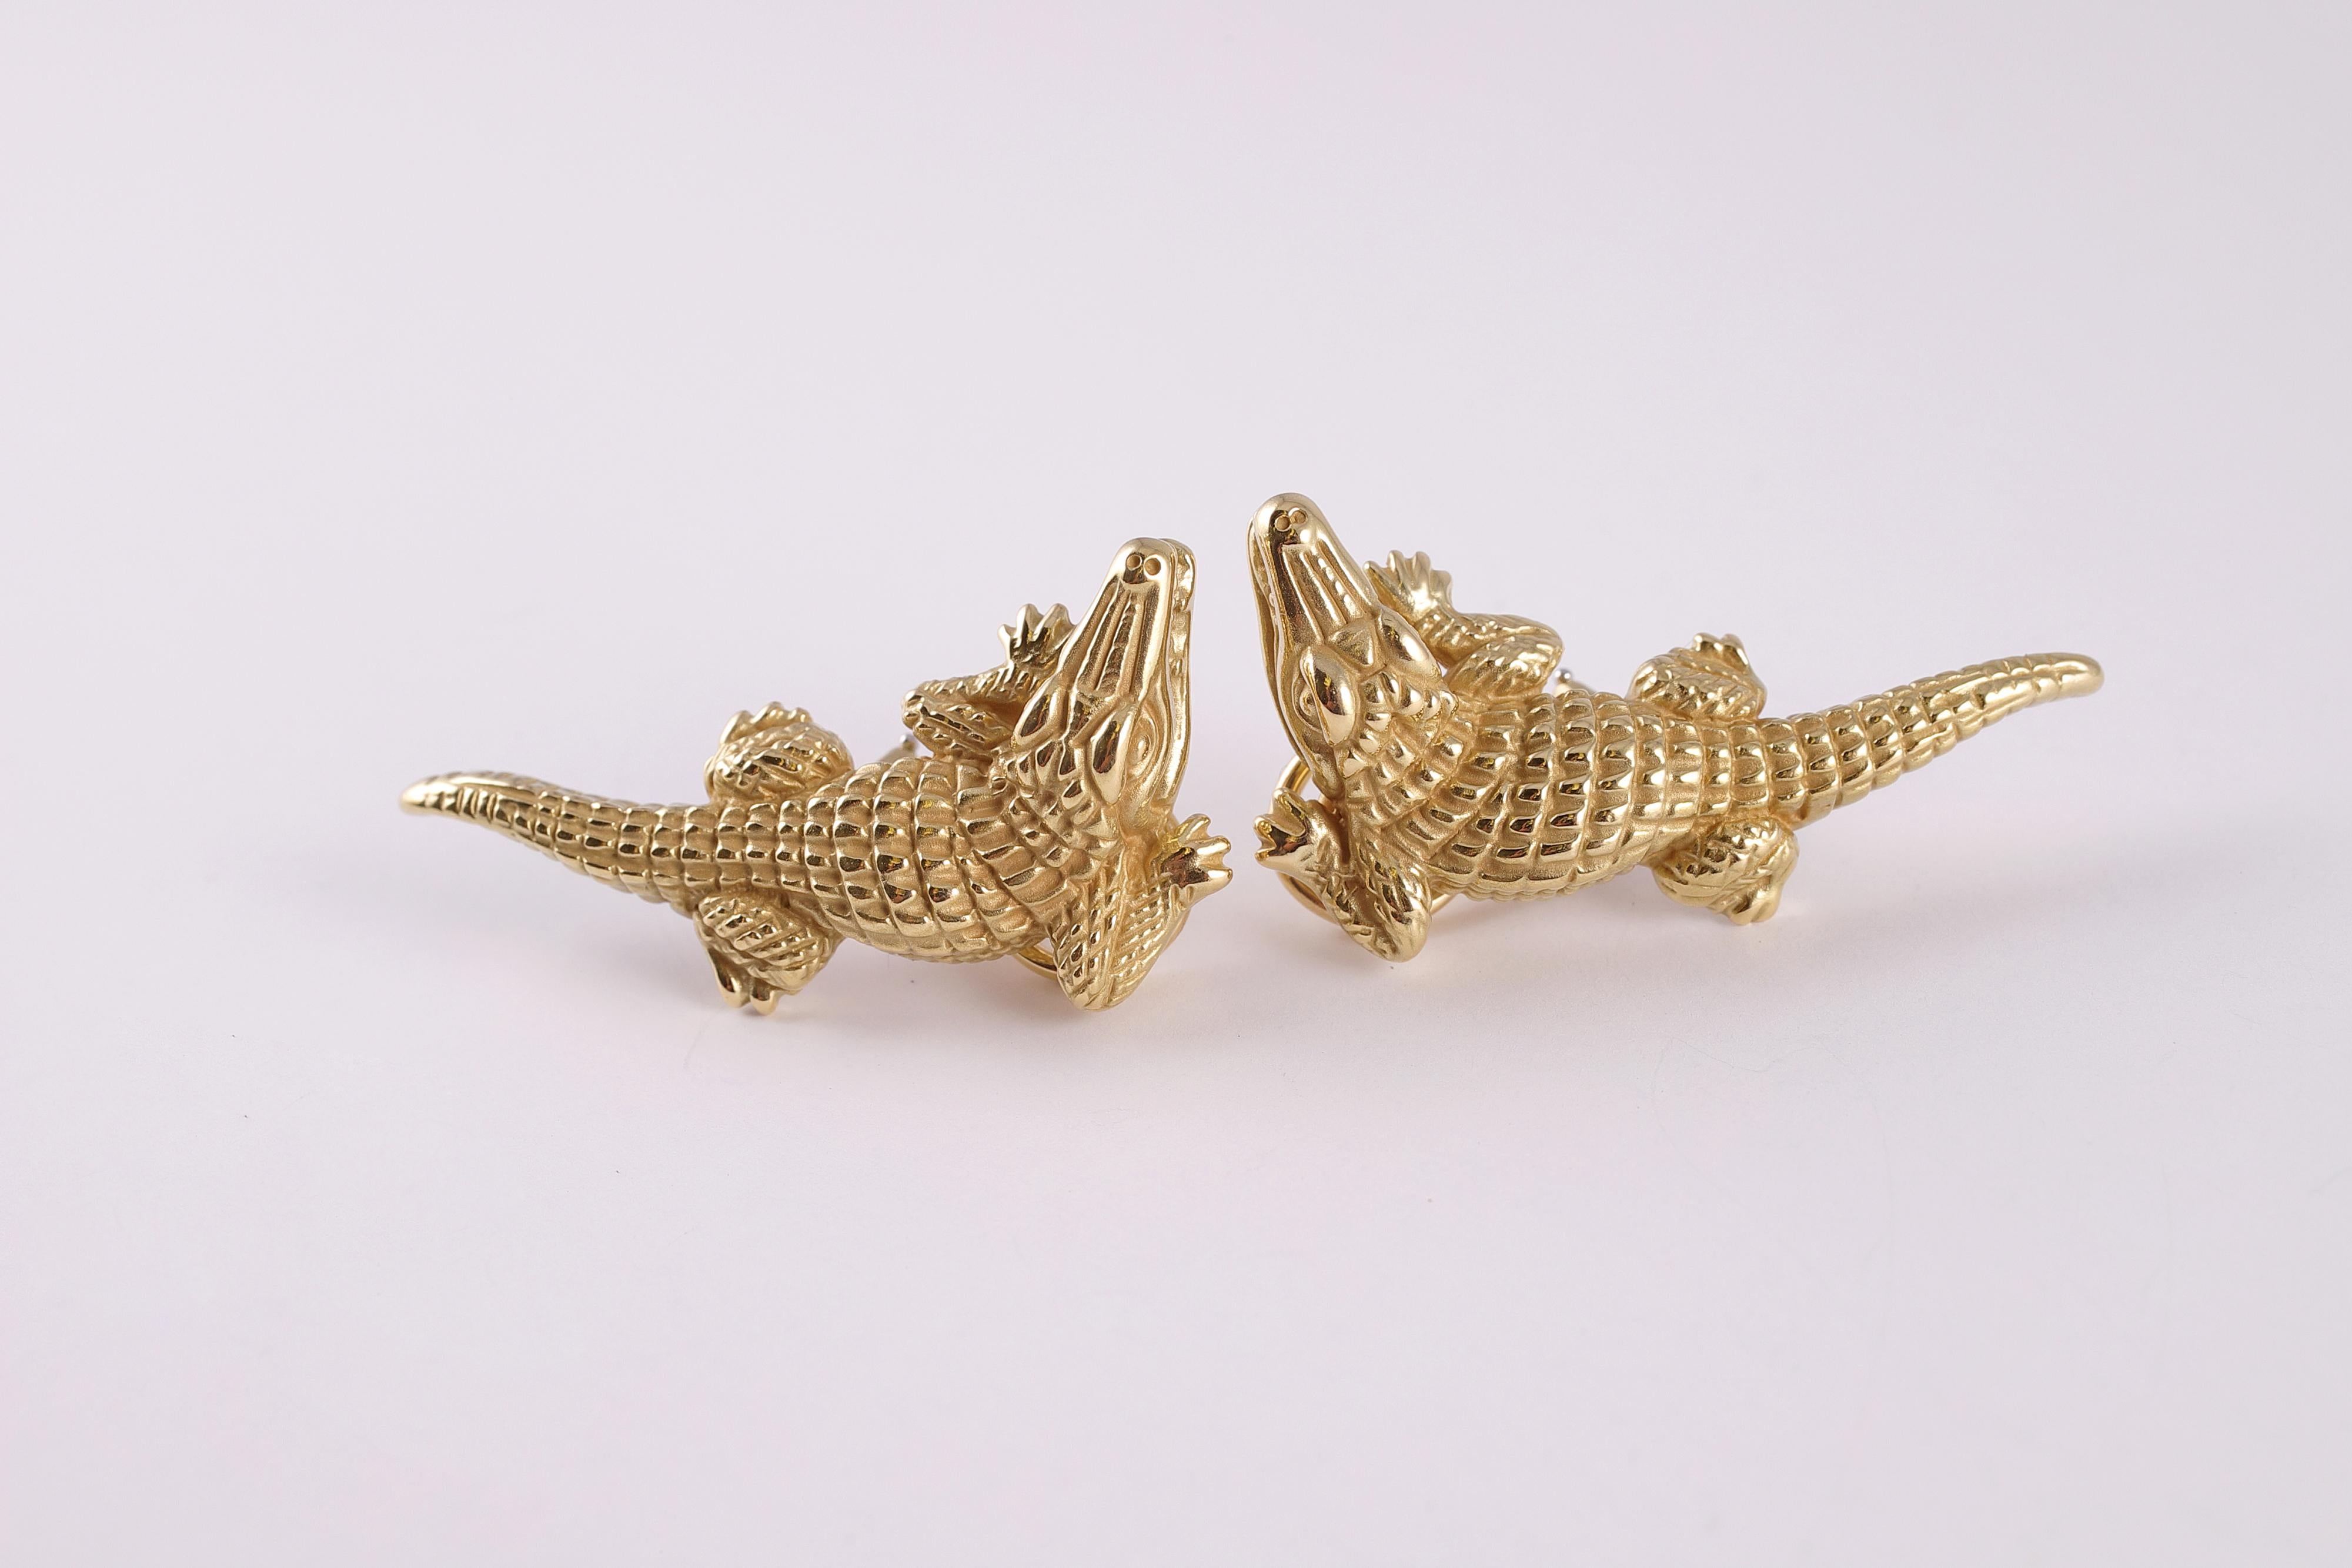 Green Gold Alligator Earrings by Kieselstein-Cord 1